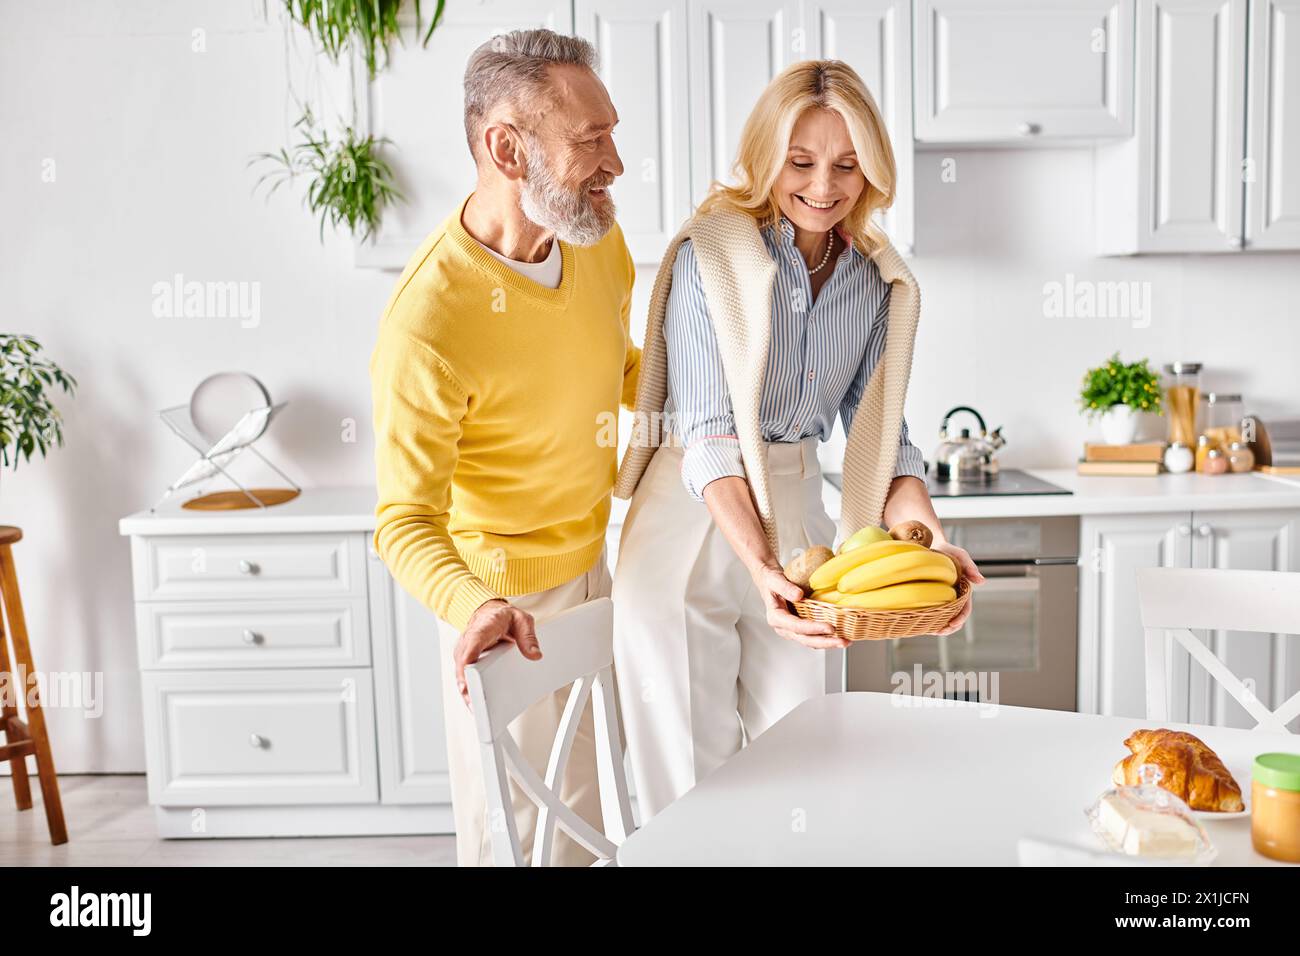 Ein reifer Mann und eine reife Frau stehen in ihrer gemütlichen Küche, halten Bananen und teilen einen süßen Moment miteinander. Stockfoto